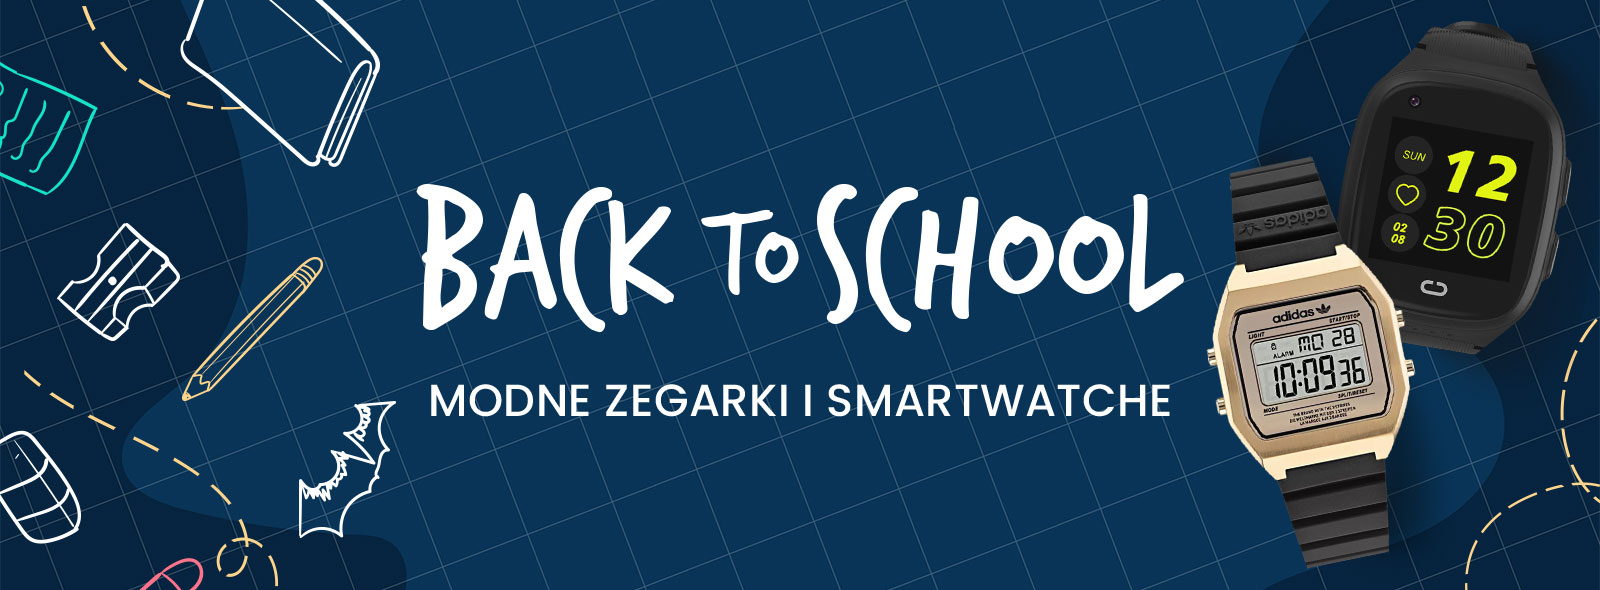 Back to school! - modne zegarki i smartwatche dla dzieci